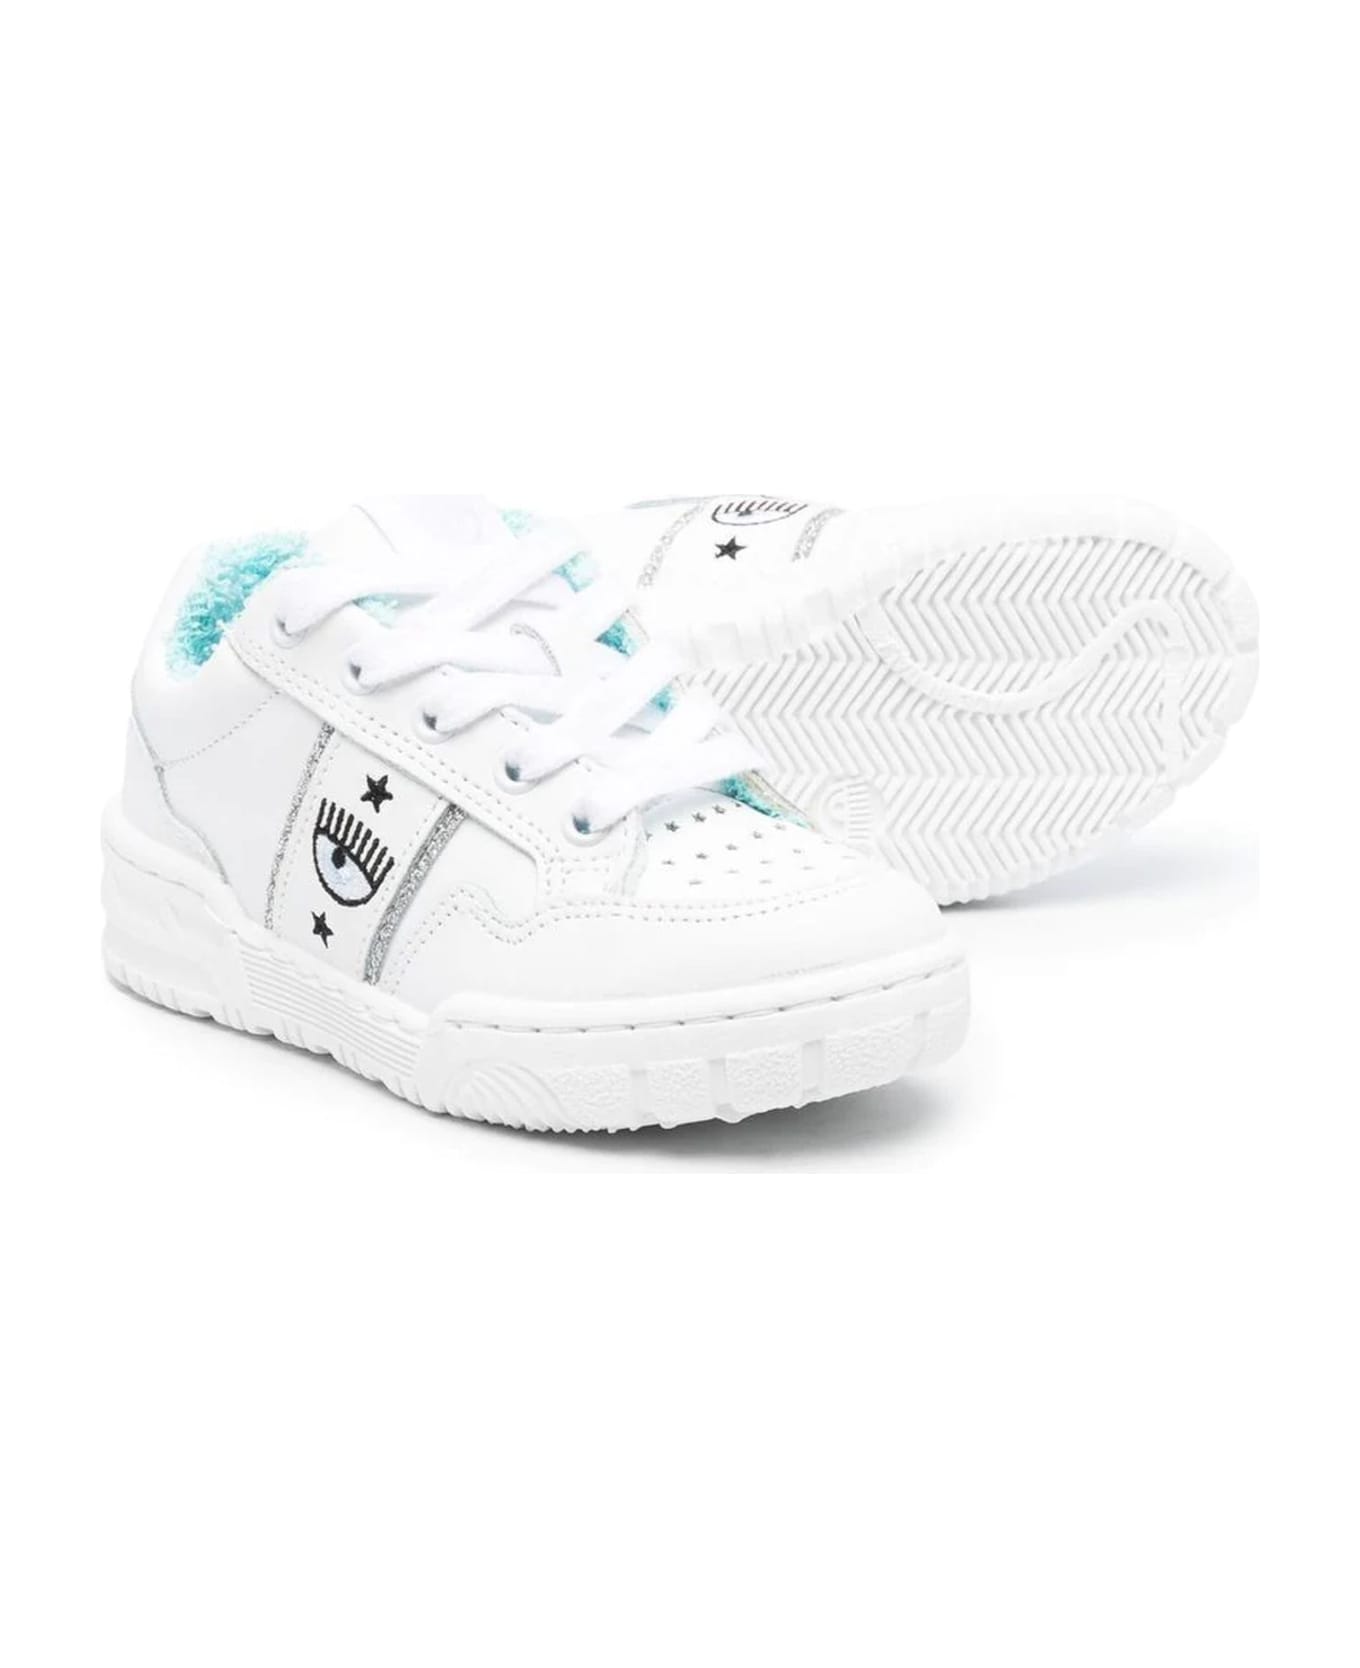 Chiara Ferragni White Leather Sneakers - Bianco